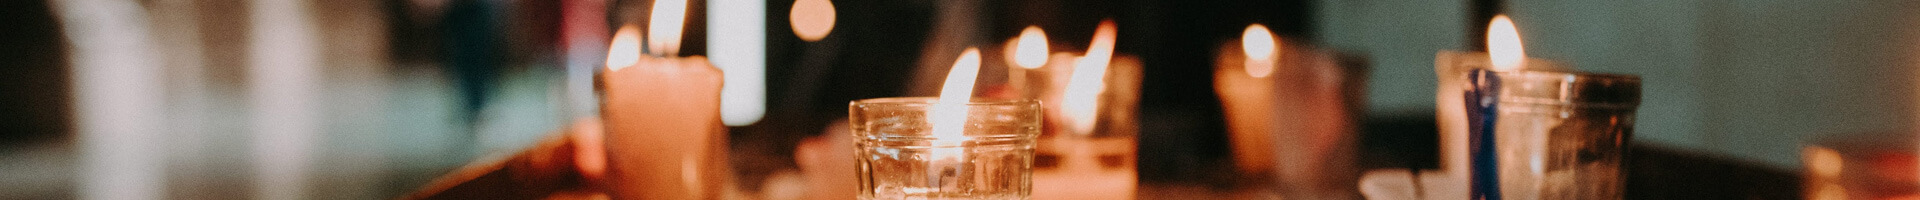 Verschiedenartige Kerzen brennen auf einem Tisch.